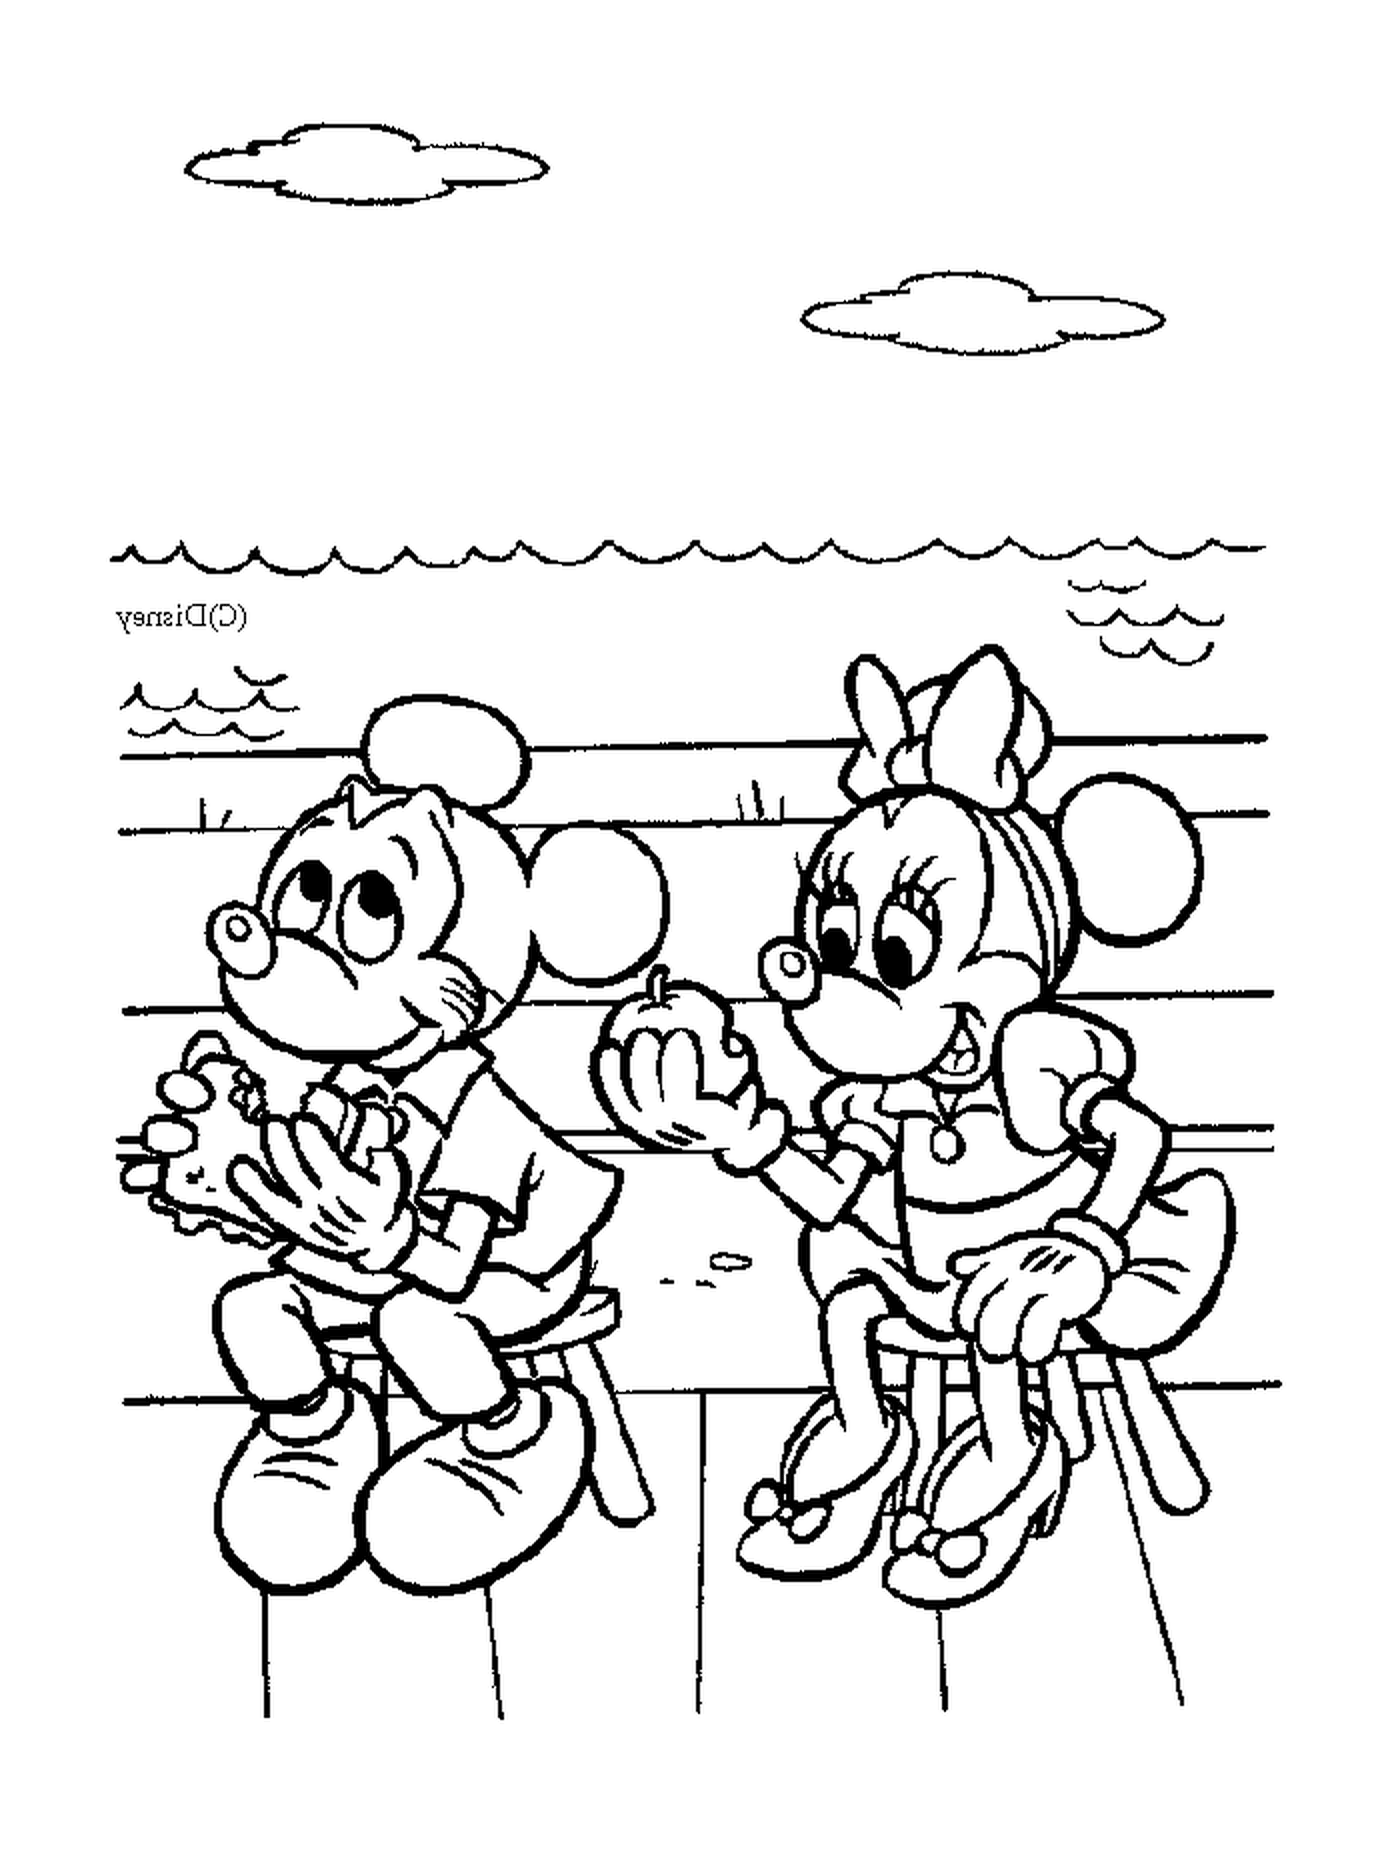  Mickey y Minnie comen: sentados en un banco 